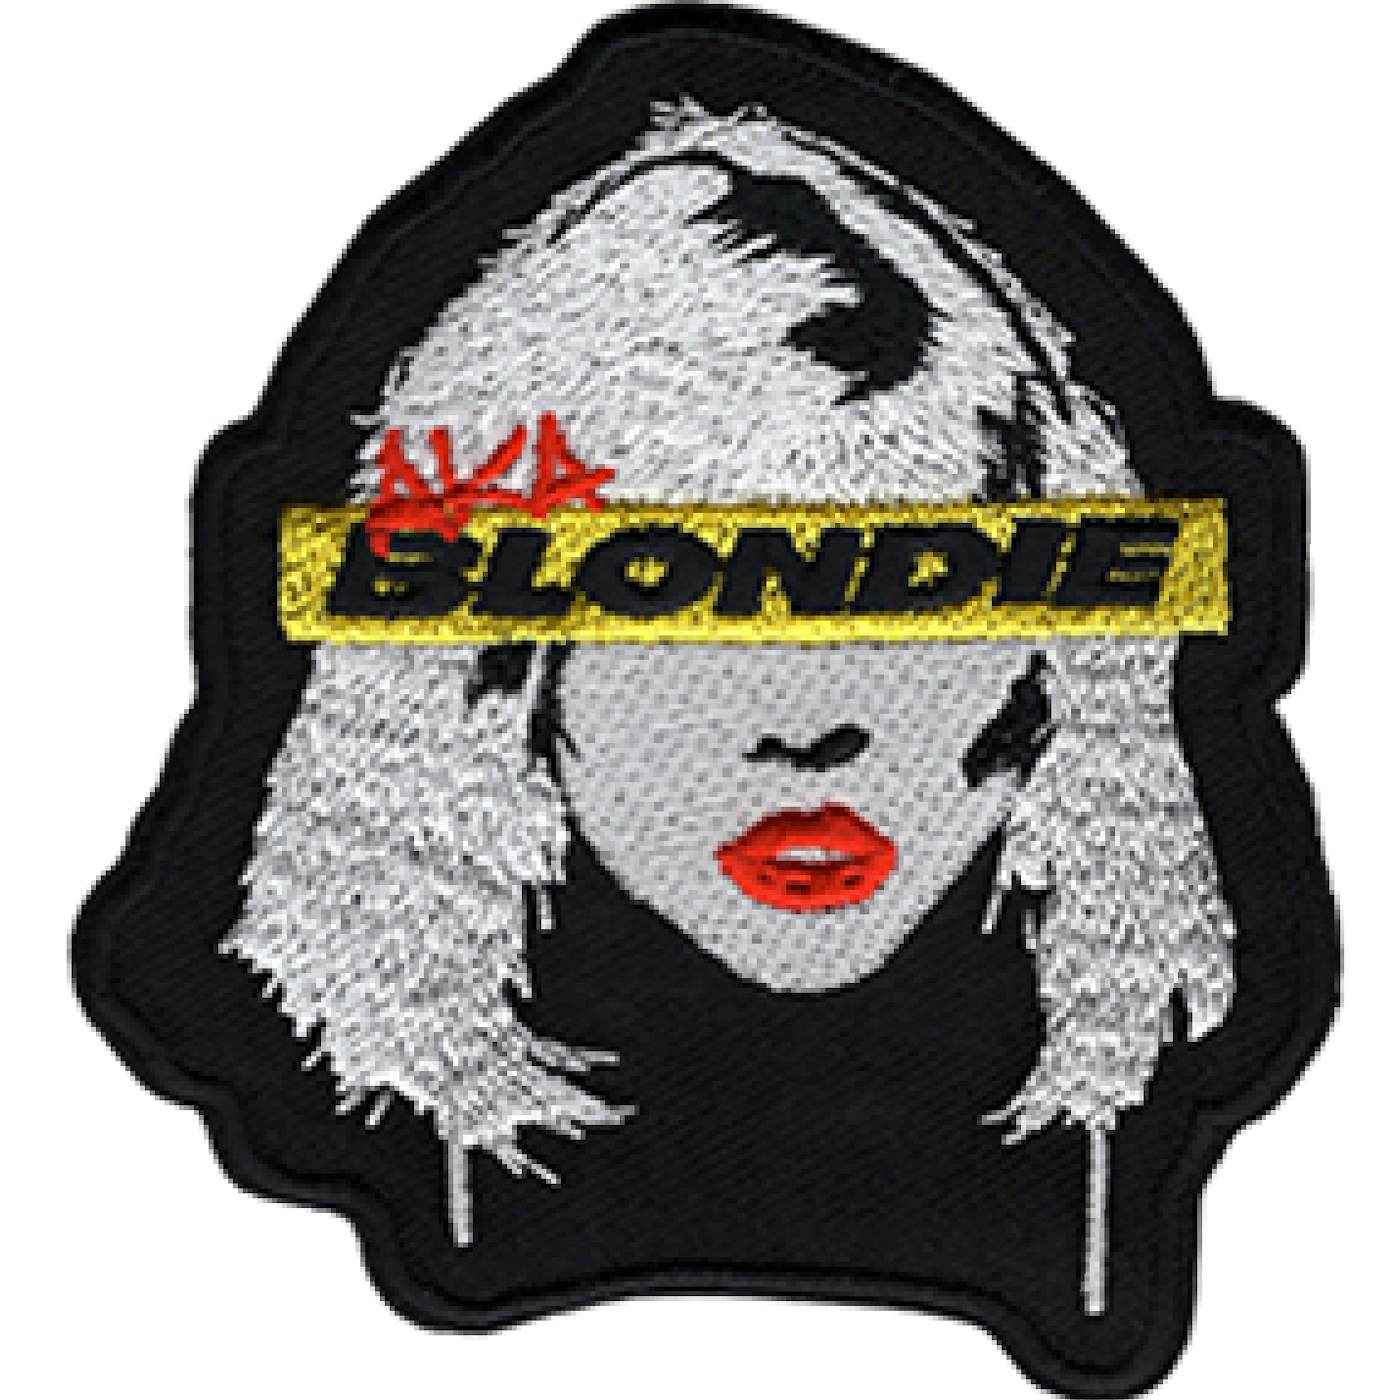  Blondie "Stencil" Patch